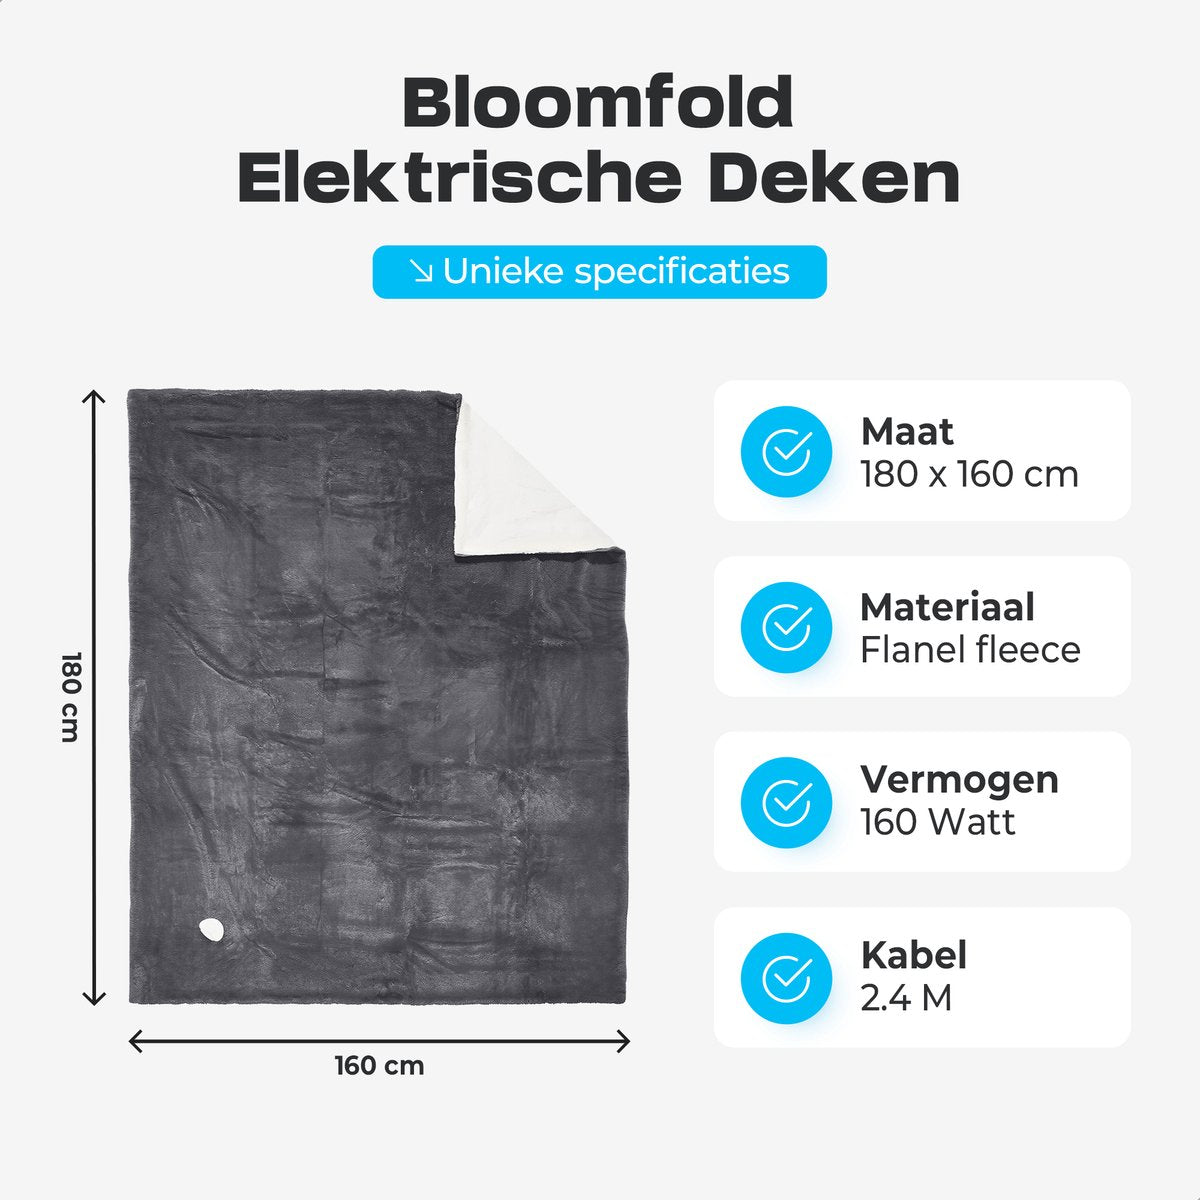 Bloomfold Elektrische Deken - 180 x 160 cm